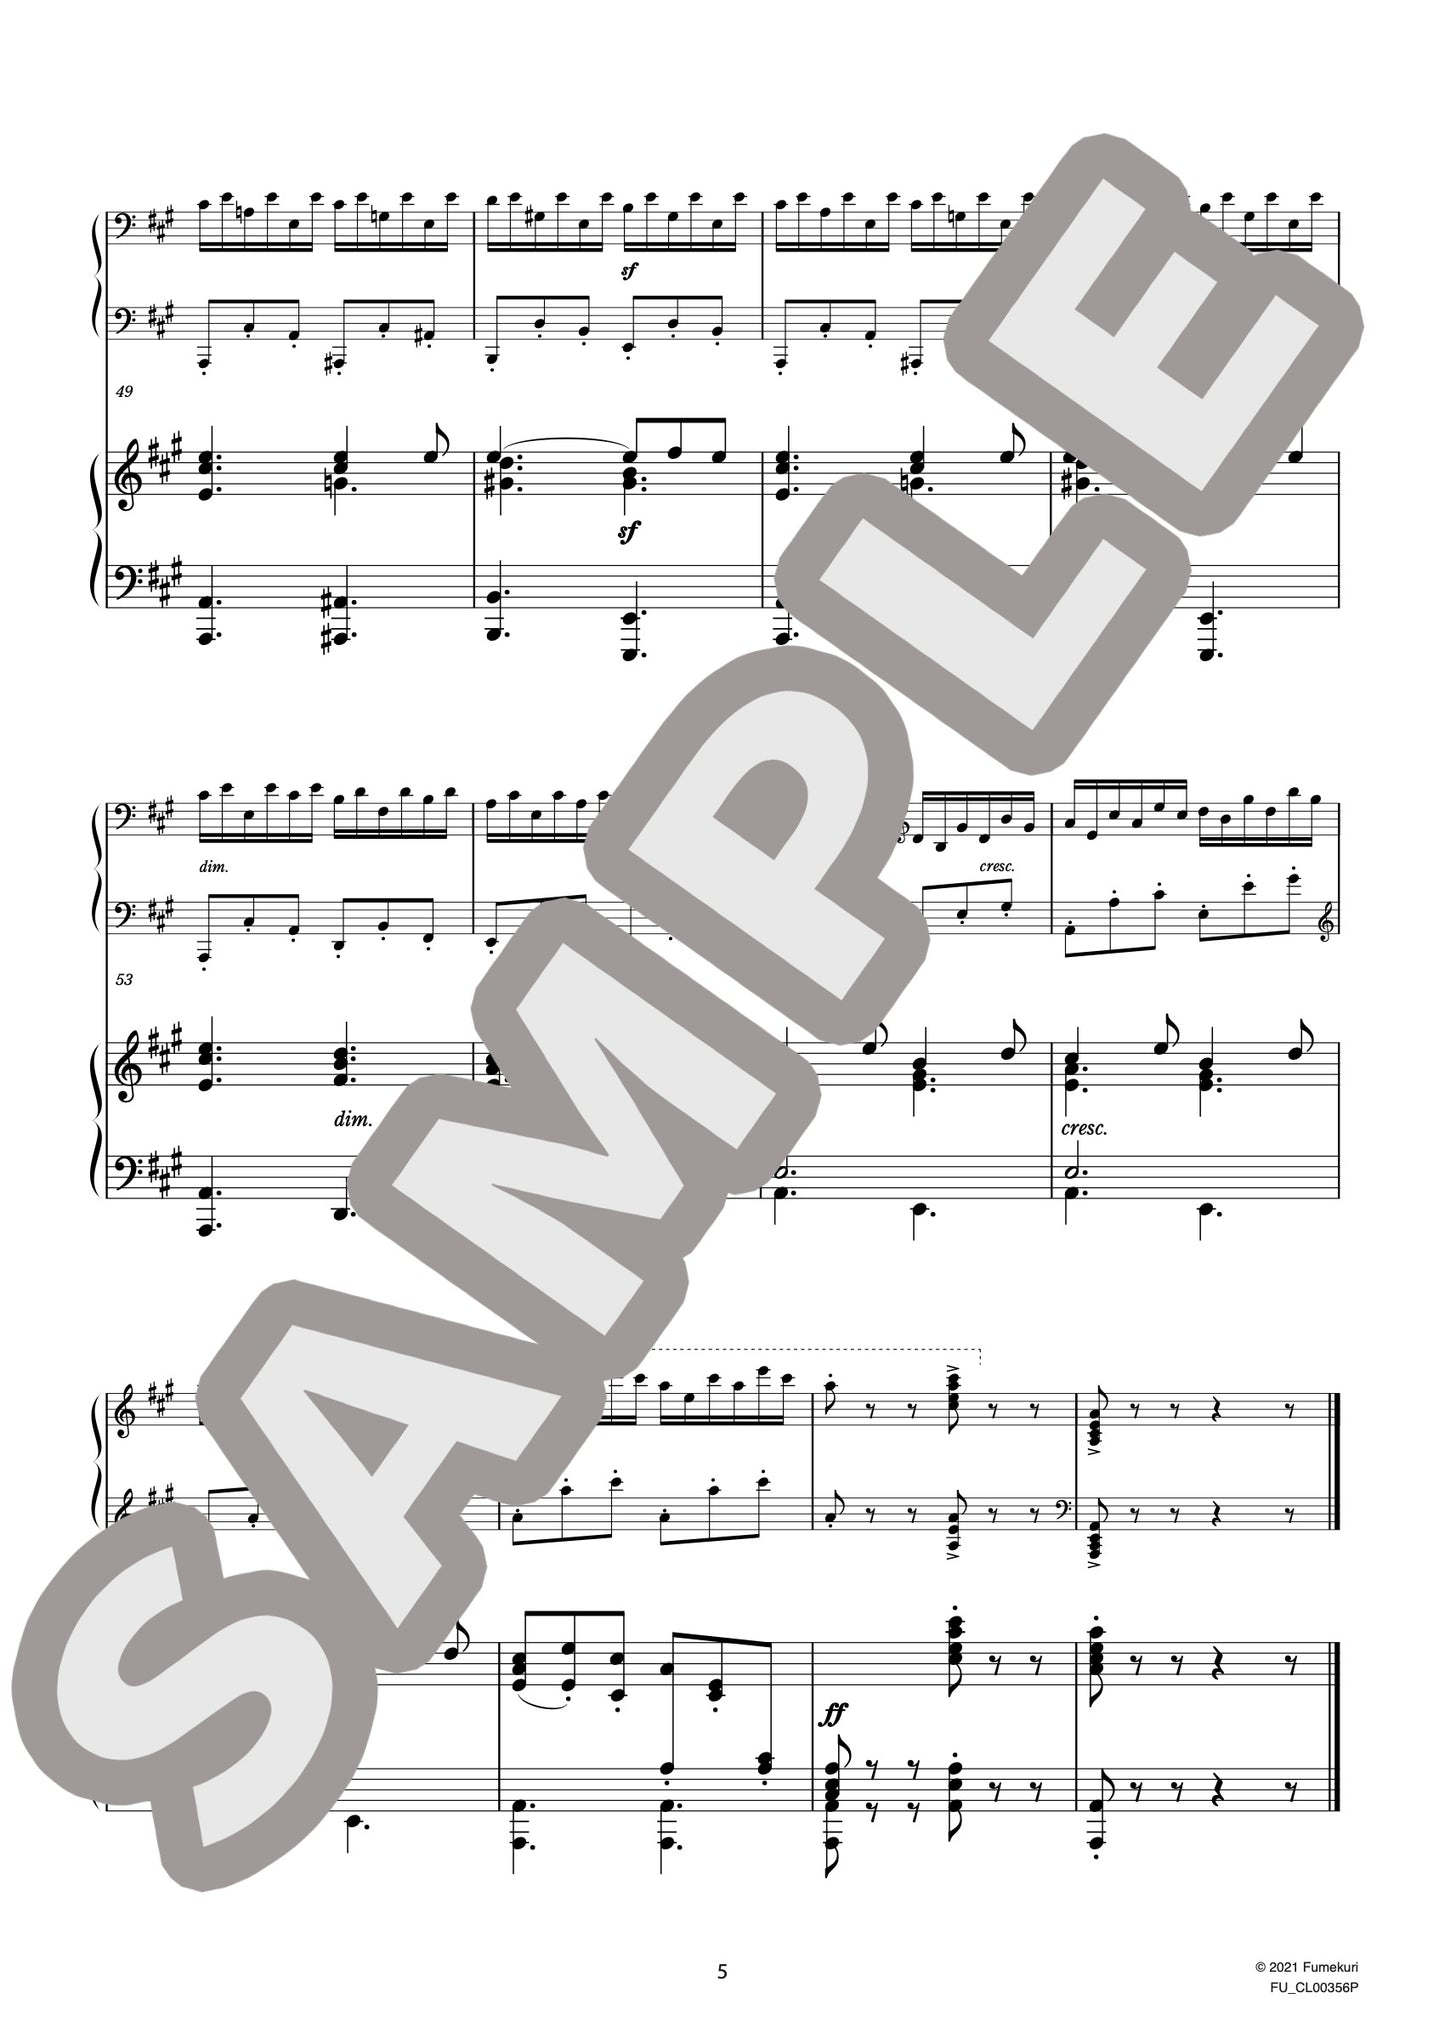 2台のピアノのための速度練習曲（40番練習曲）作品299b 第23番（CZERNY) / クラシック・オリジナル楽曲【中上級】